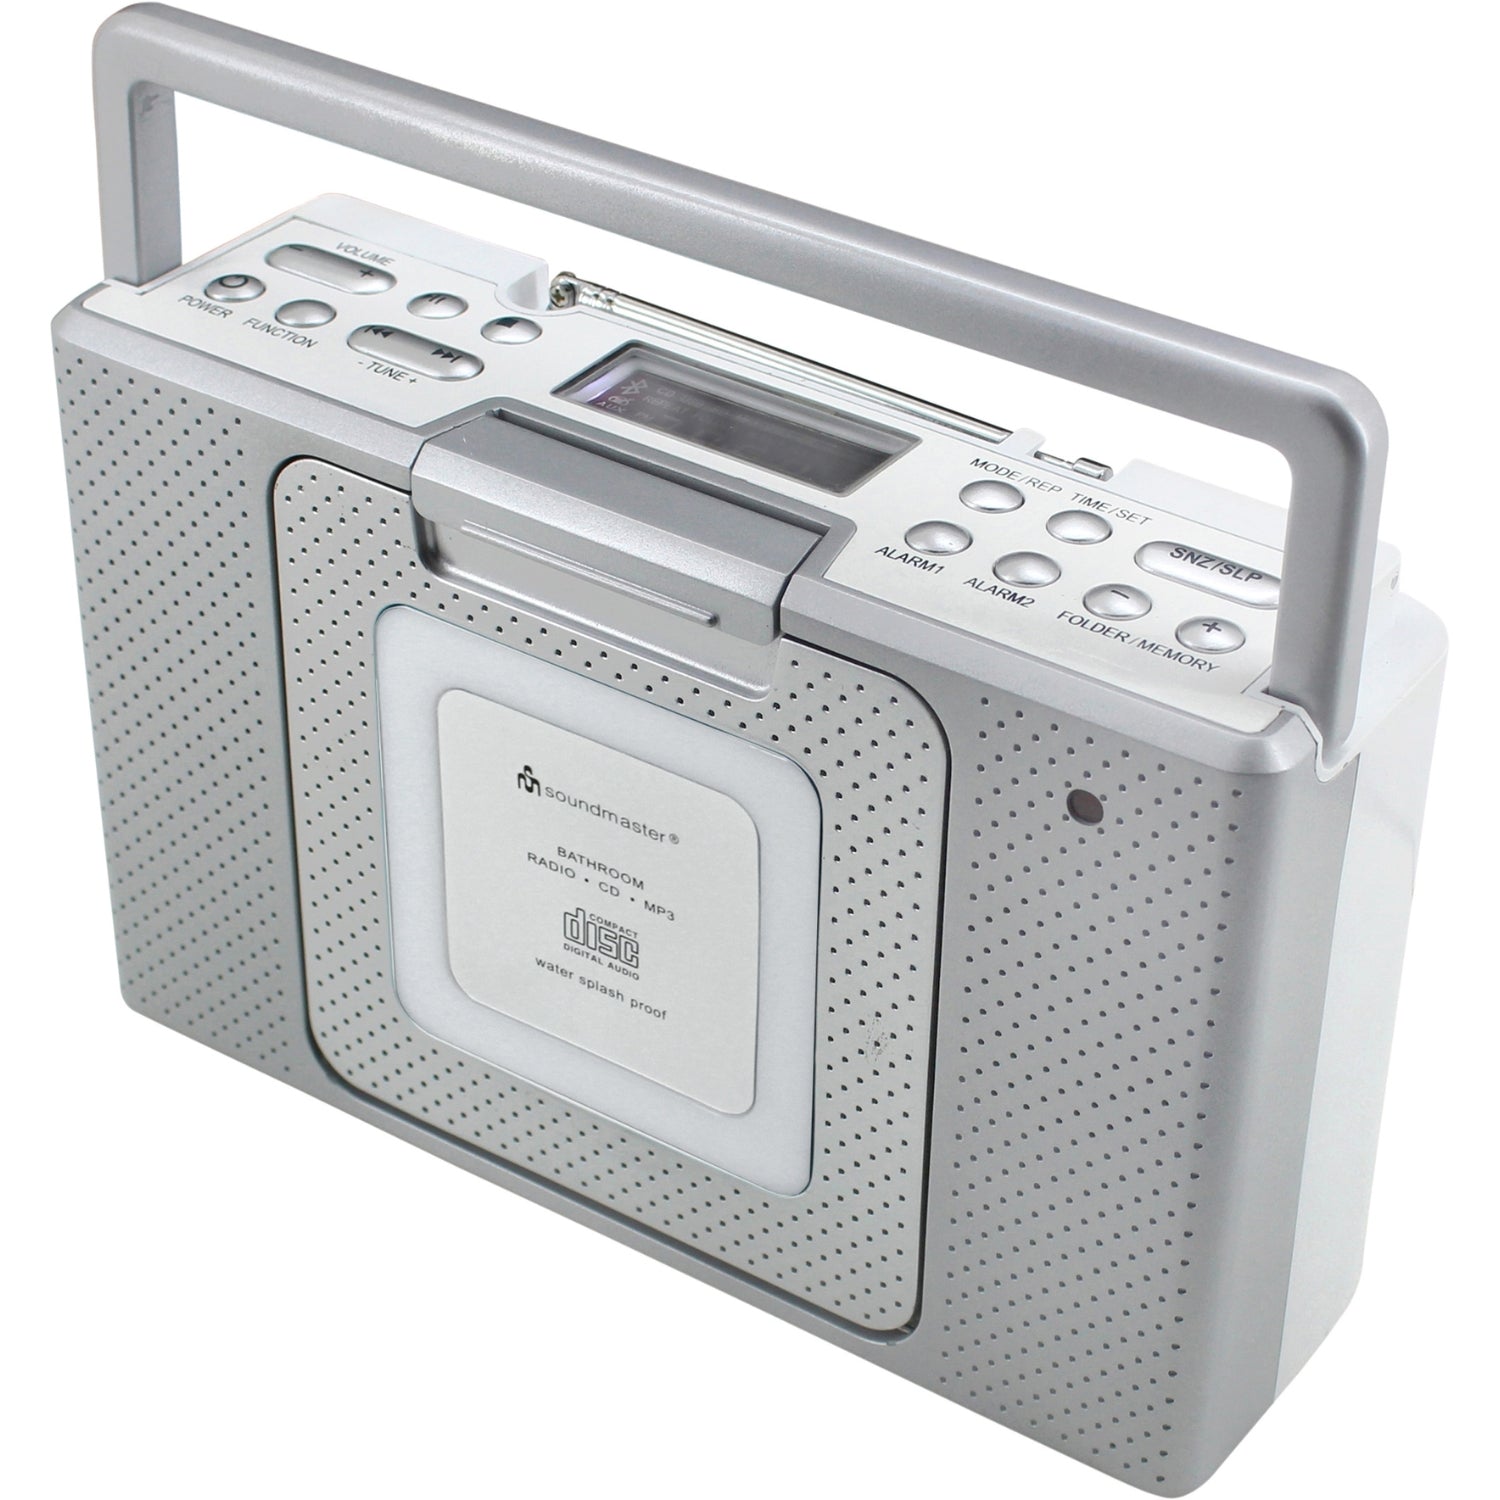 Soundmaster BCD480 Badradio Küchenradio CD-Player Uhr IPX4 spritzwassergeschützt